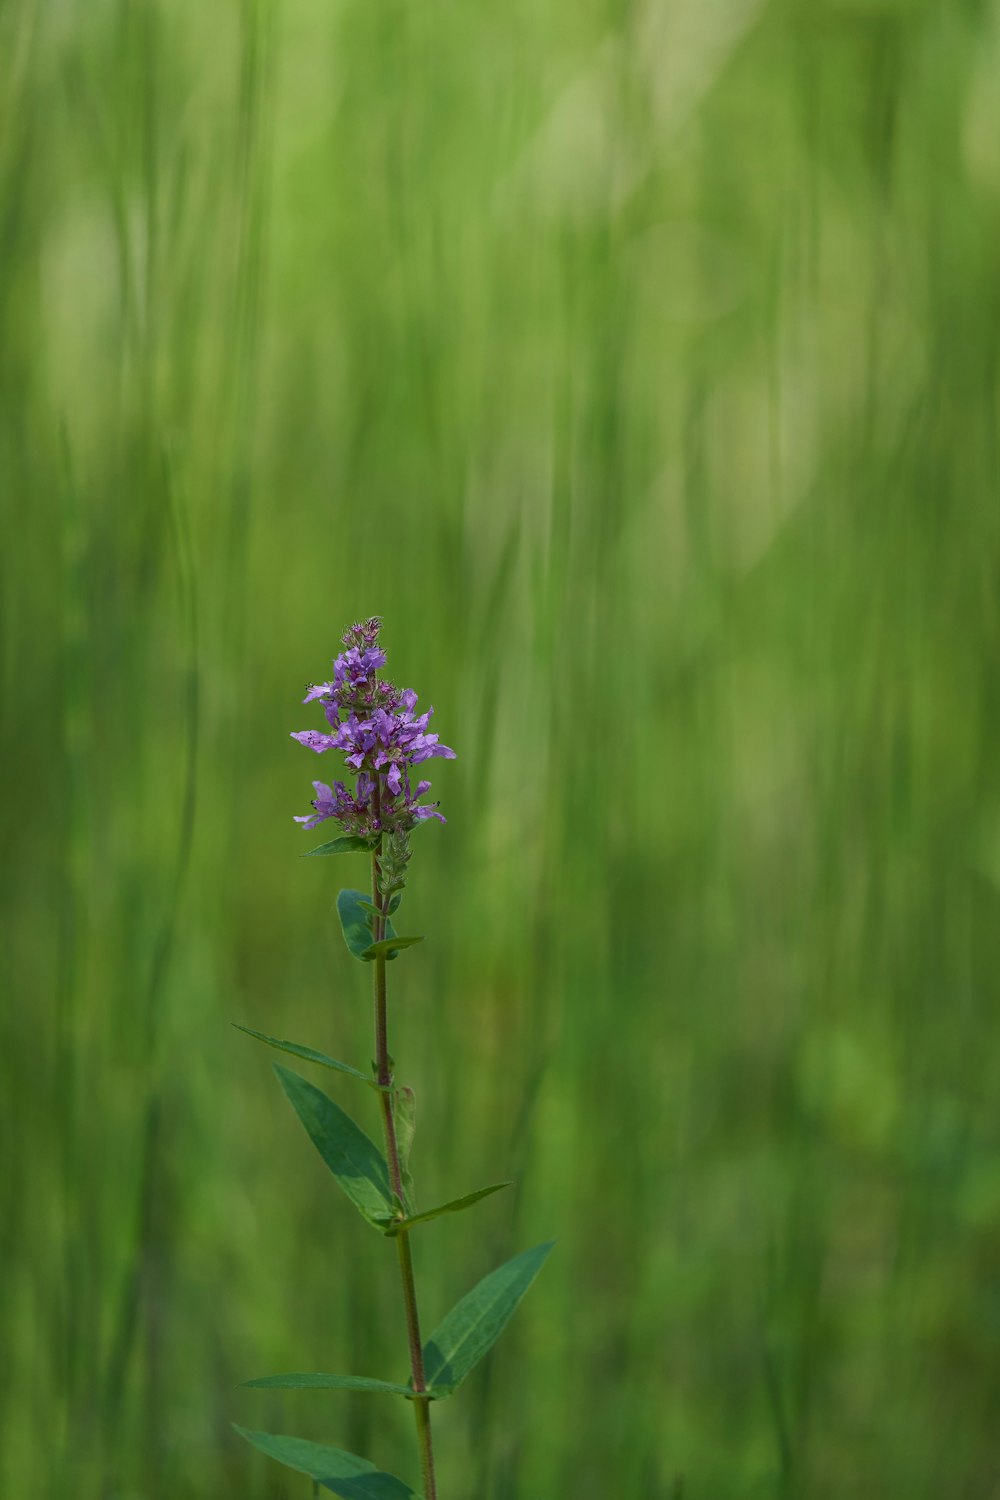 a single purple flower in a field of green grass